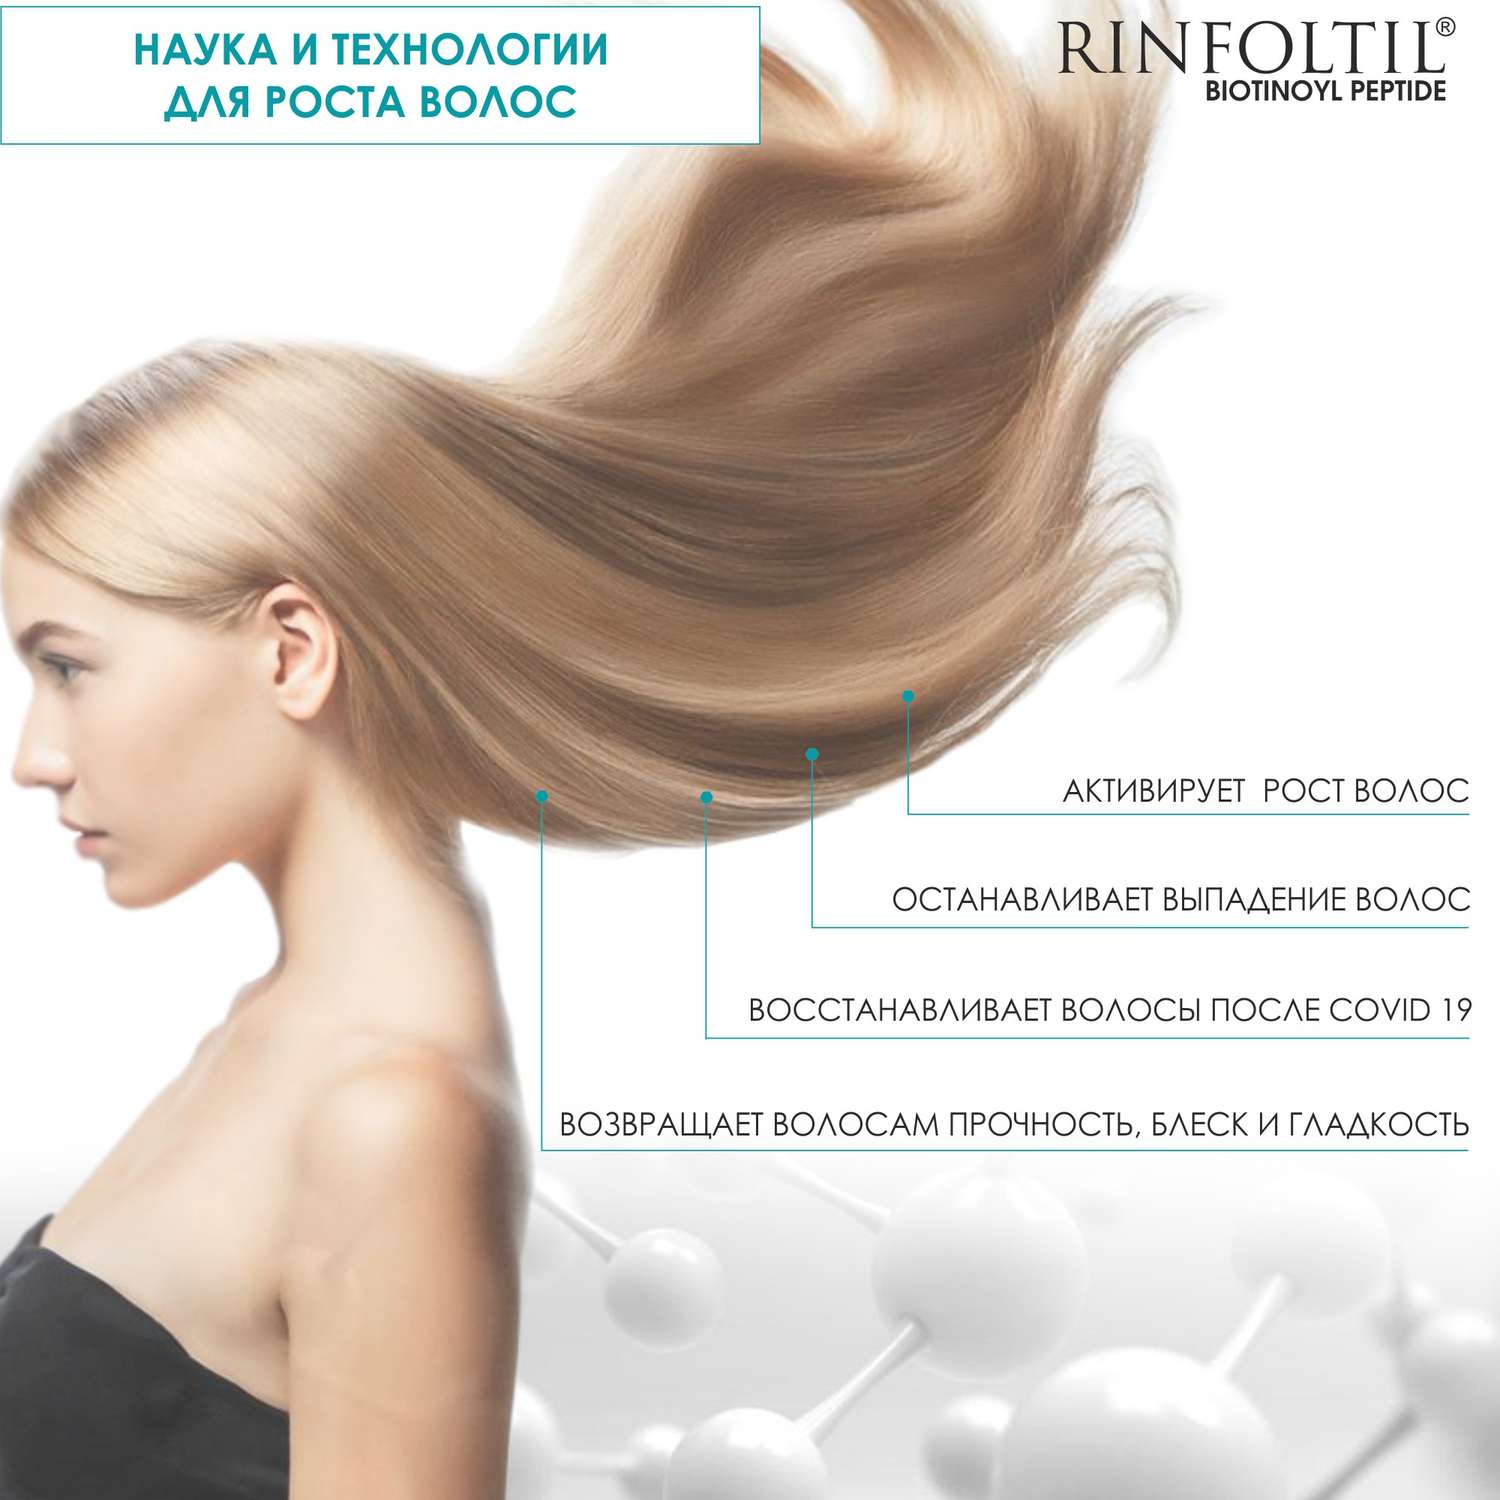 Сыворотка Rinfoltil BIOTINOYL Пептид. Липосомальная против выпадения и для роста волос - фото 4